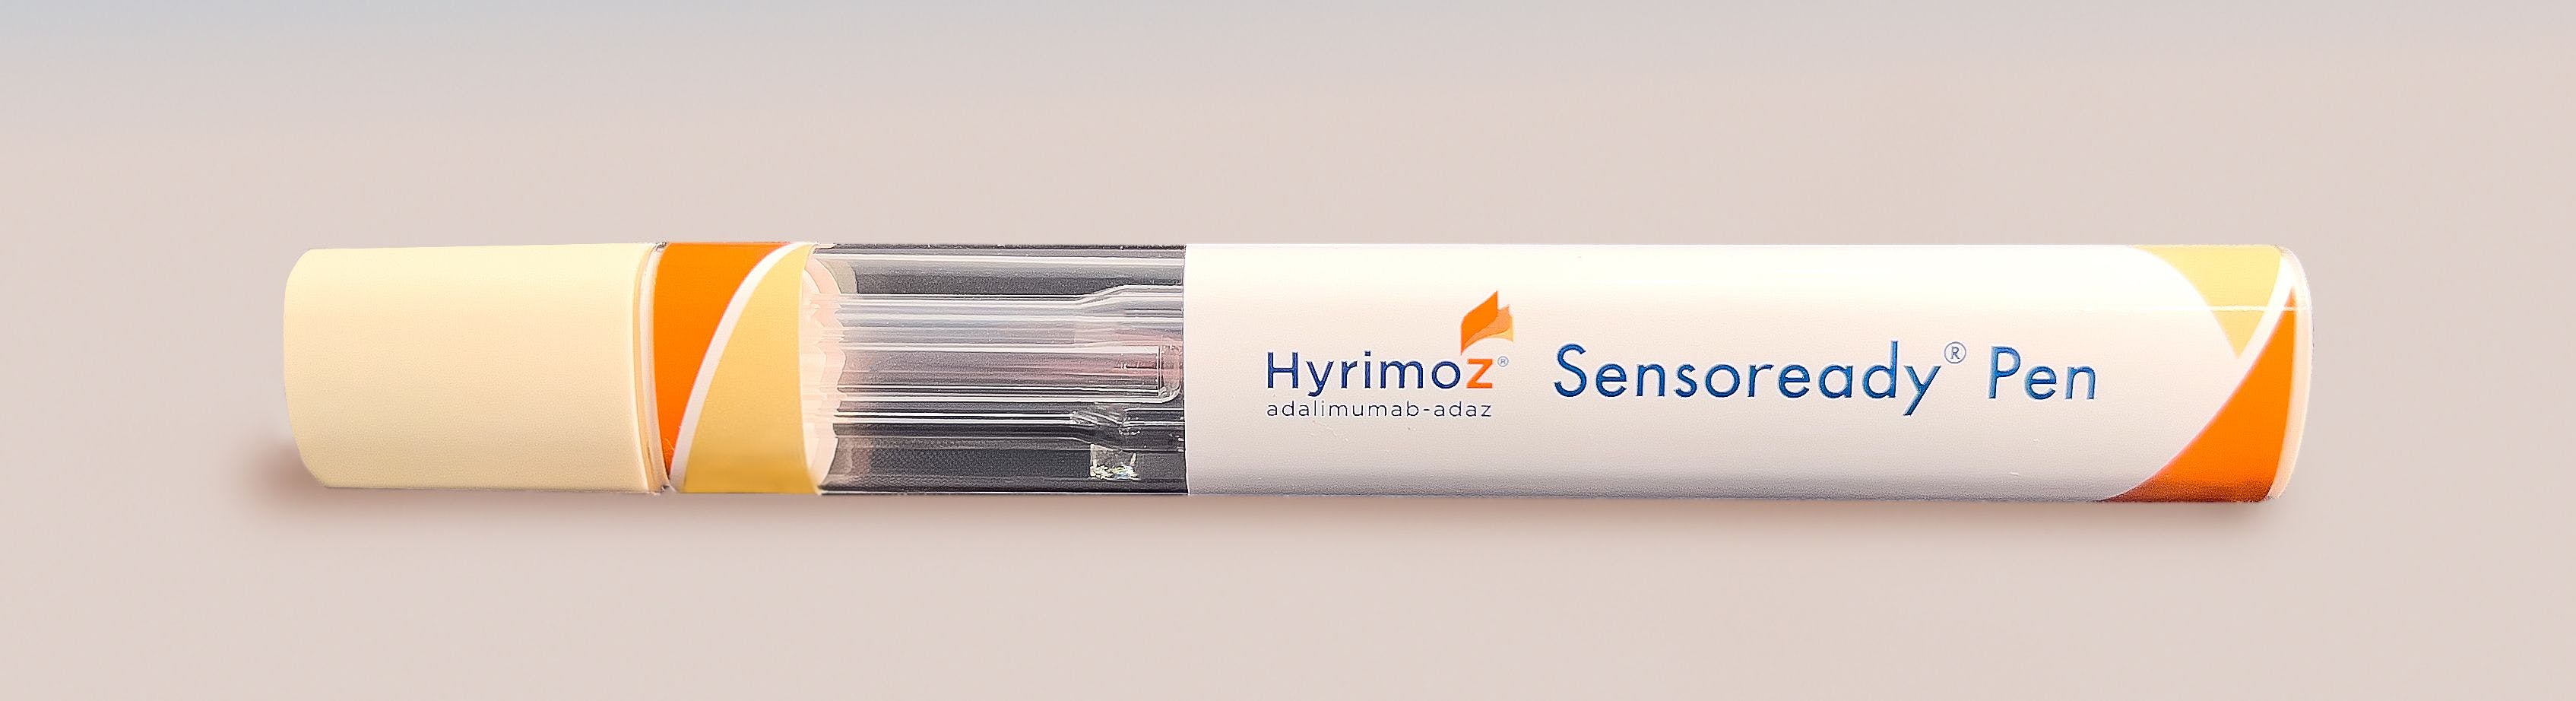 Hyrimoz autoinjector pen